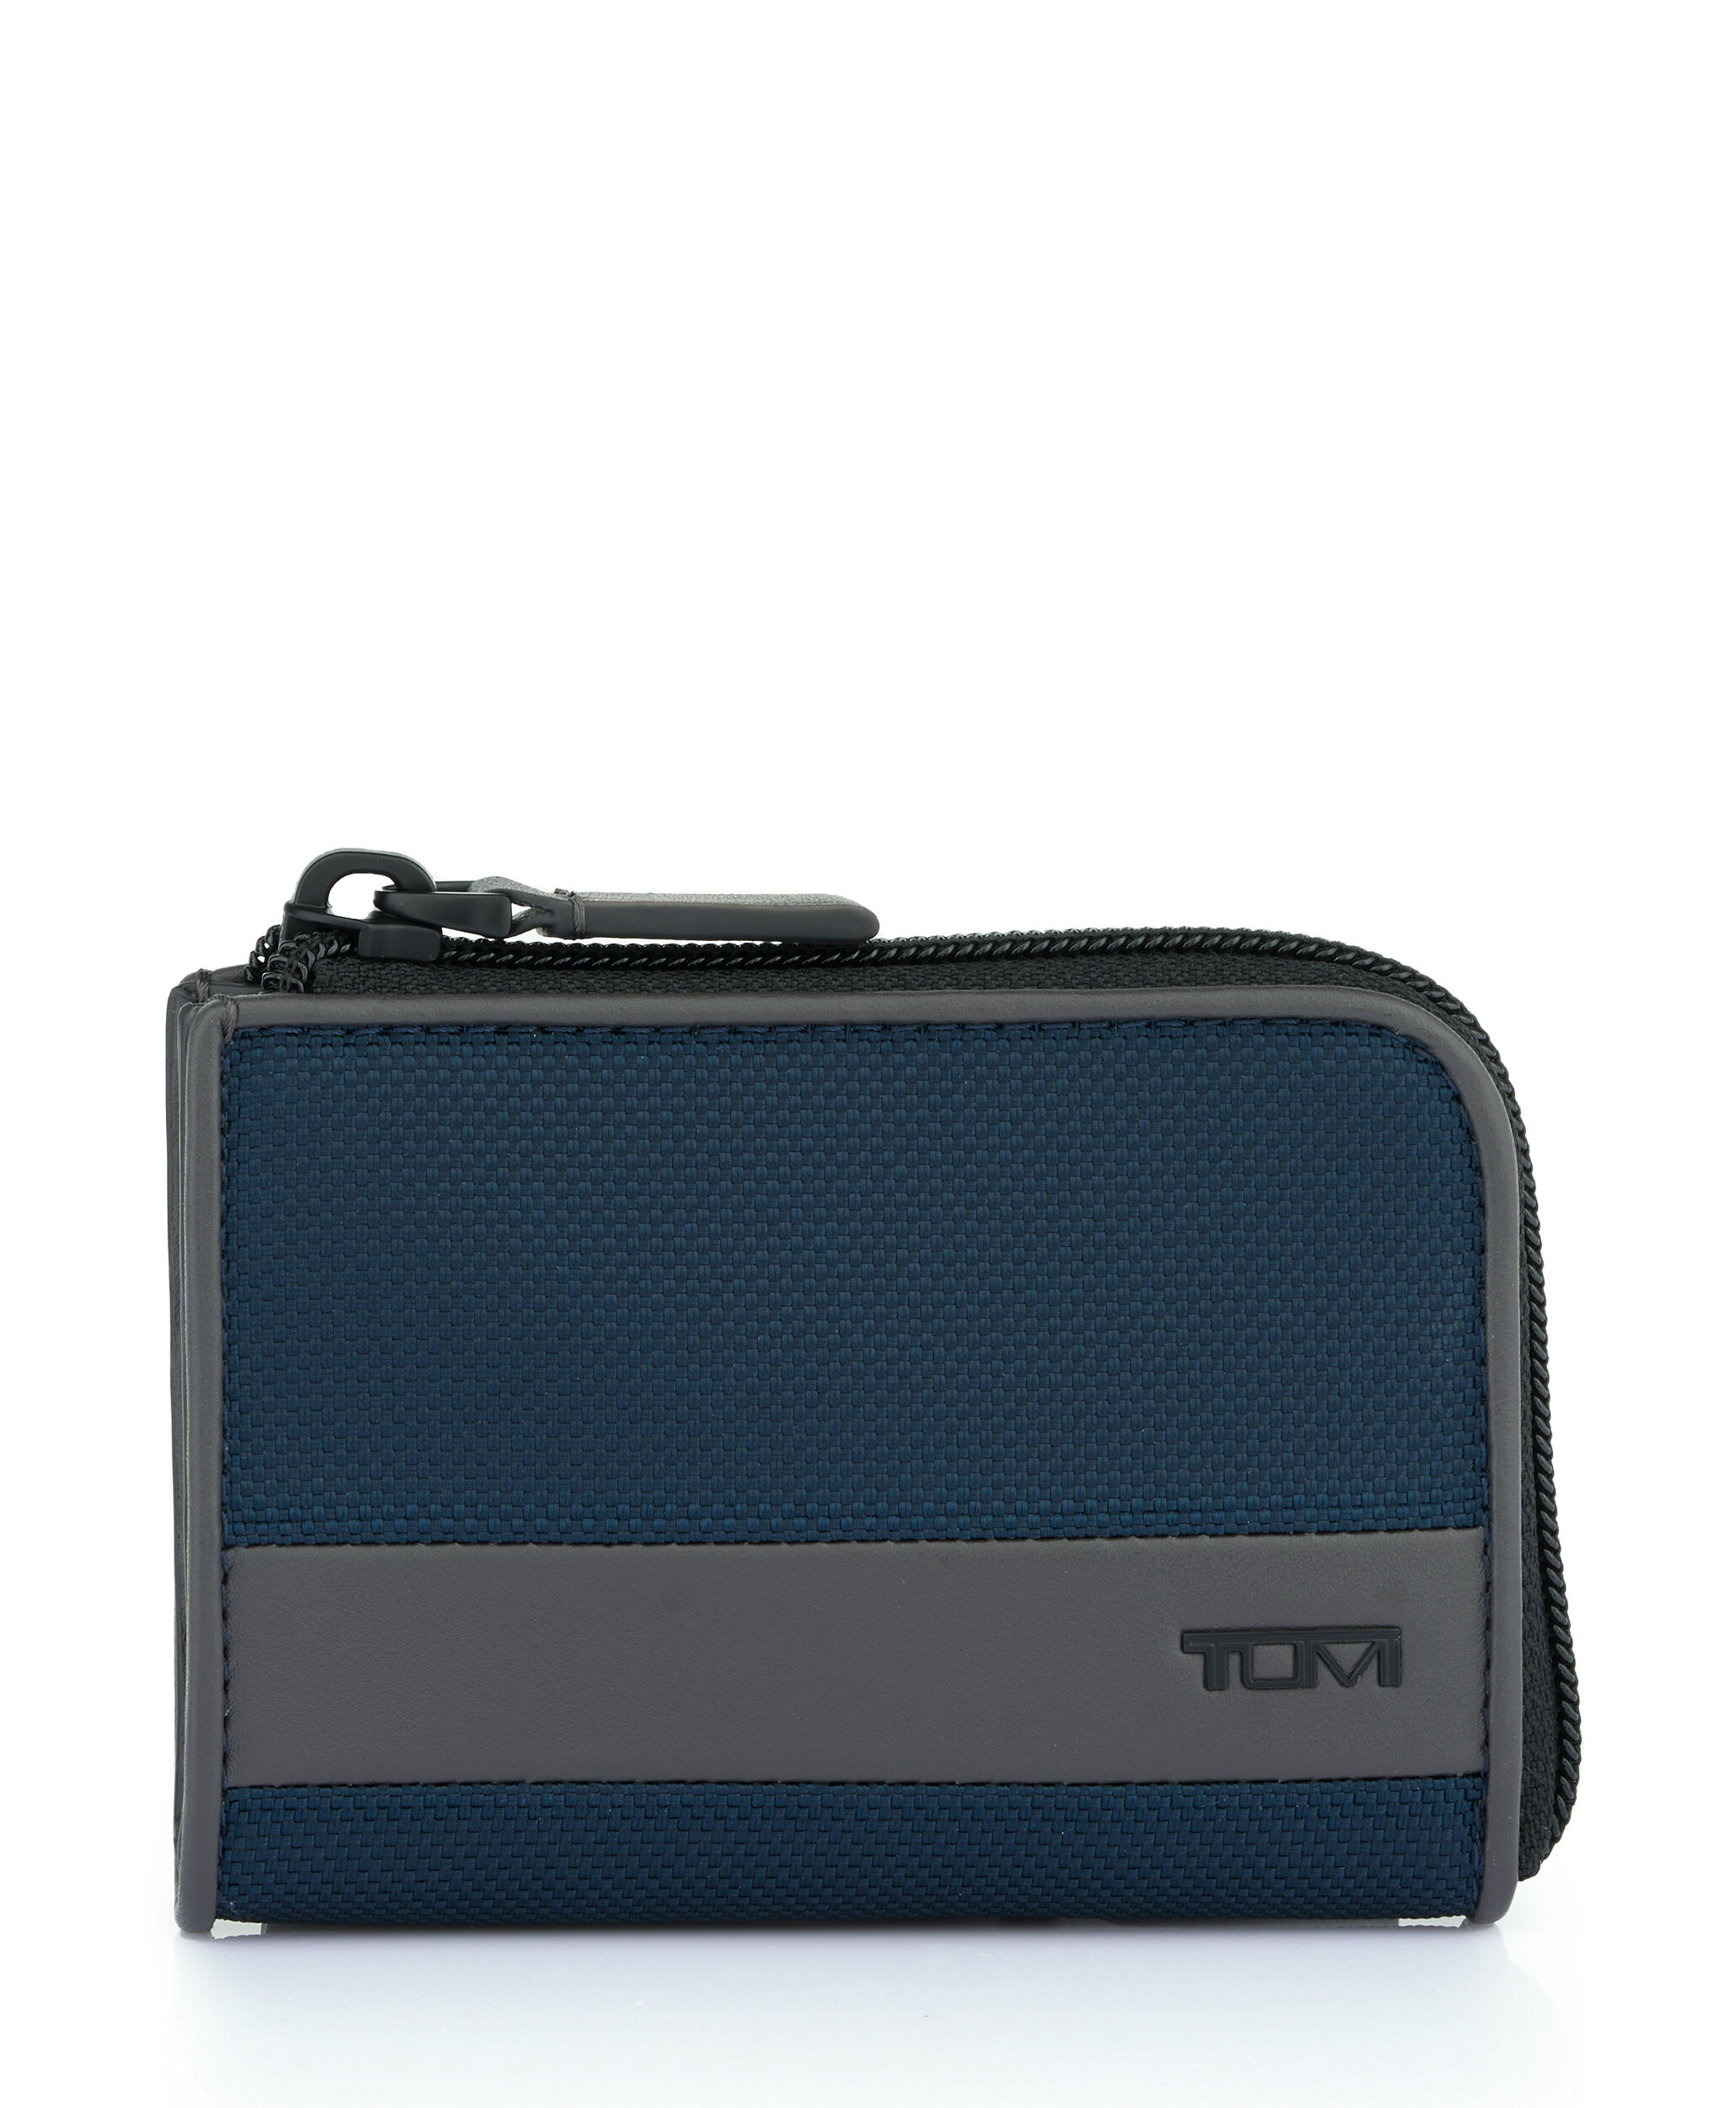 TUMI Nassau RFID Money Clip Leather Wallet (Grey Texture) – Lieber's Luggage